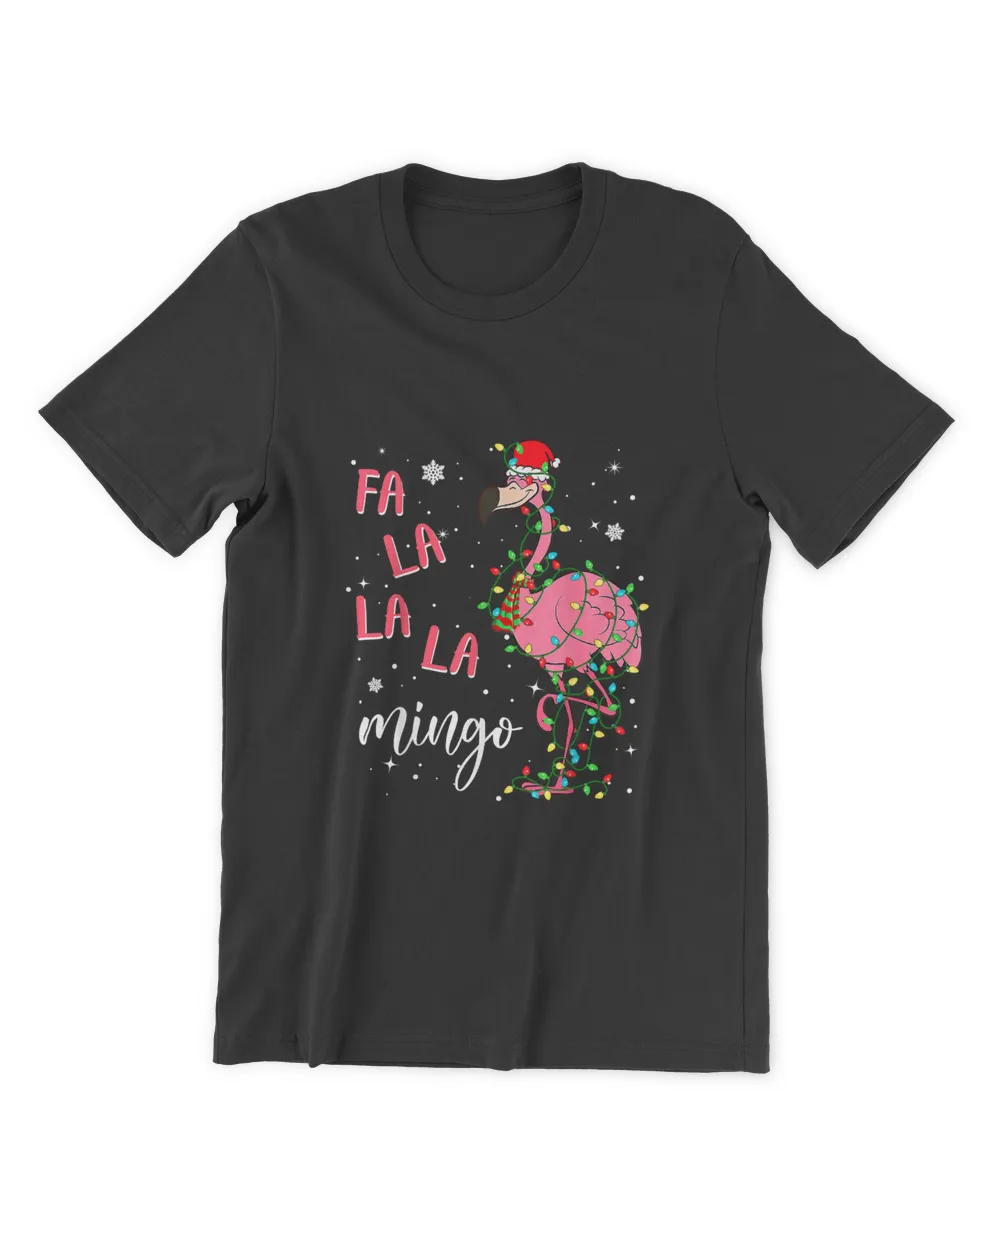 Fa La La La mingo Flamingo for Christmas Xmas